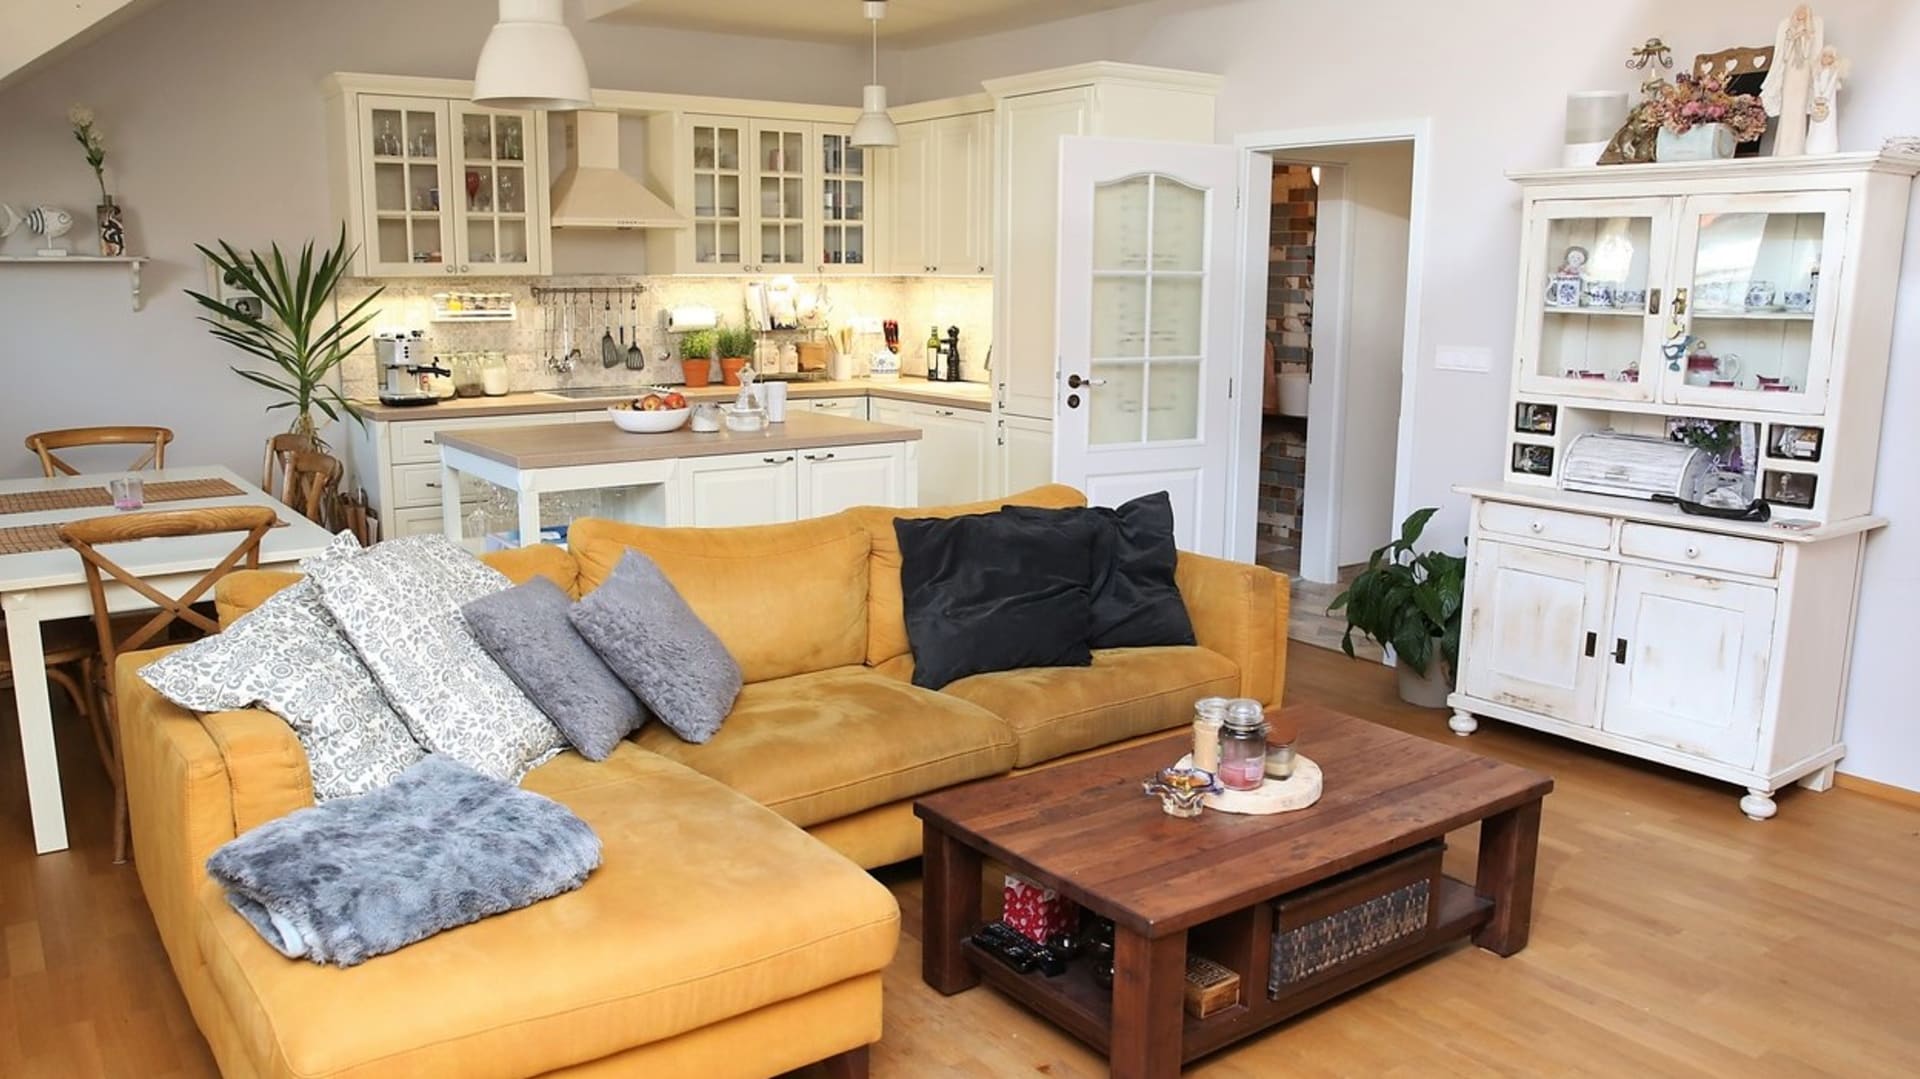 Vše důležité se v bytě odehrává v obývacím pokoji propojeném s kuchyní a jídelnou.